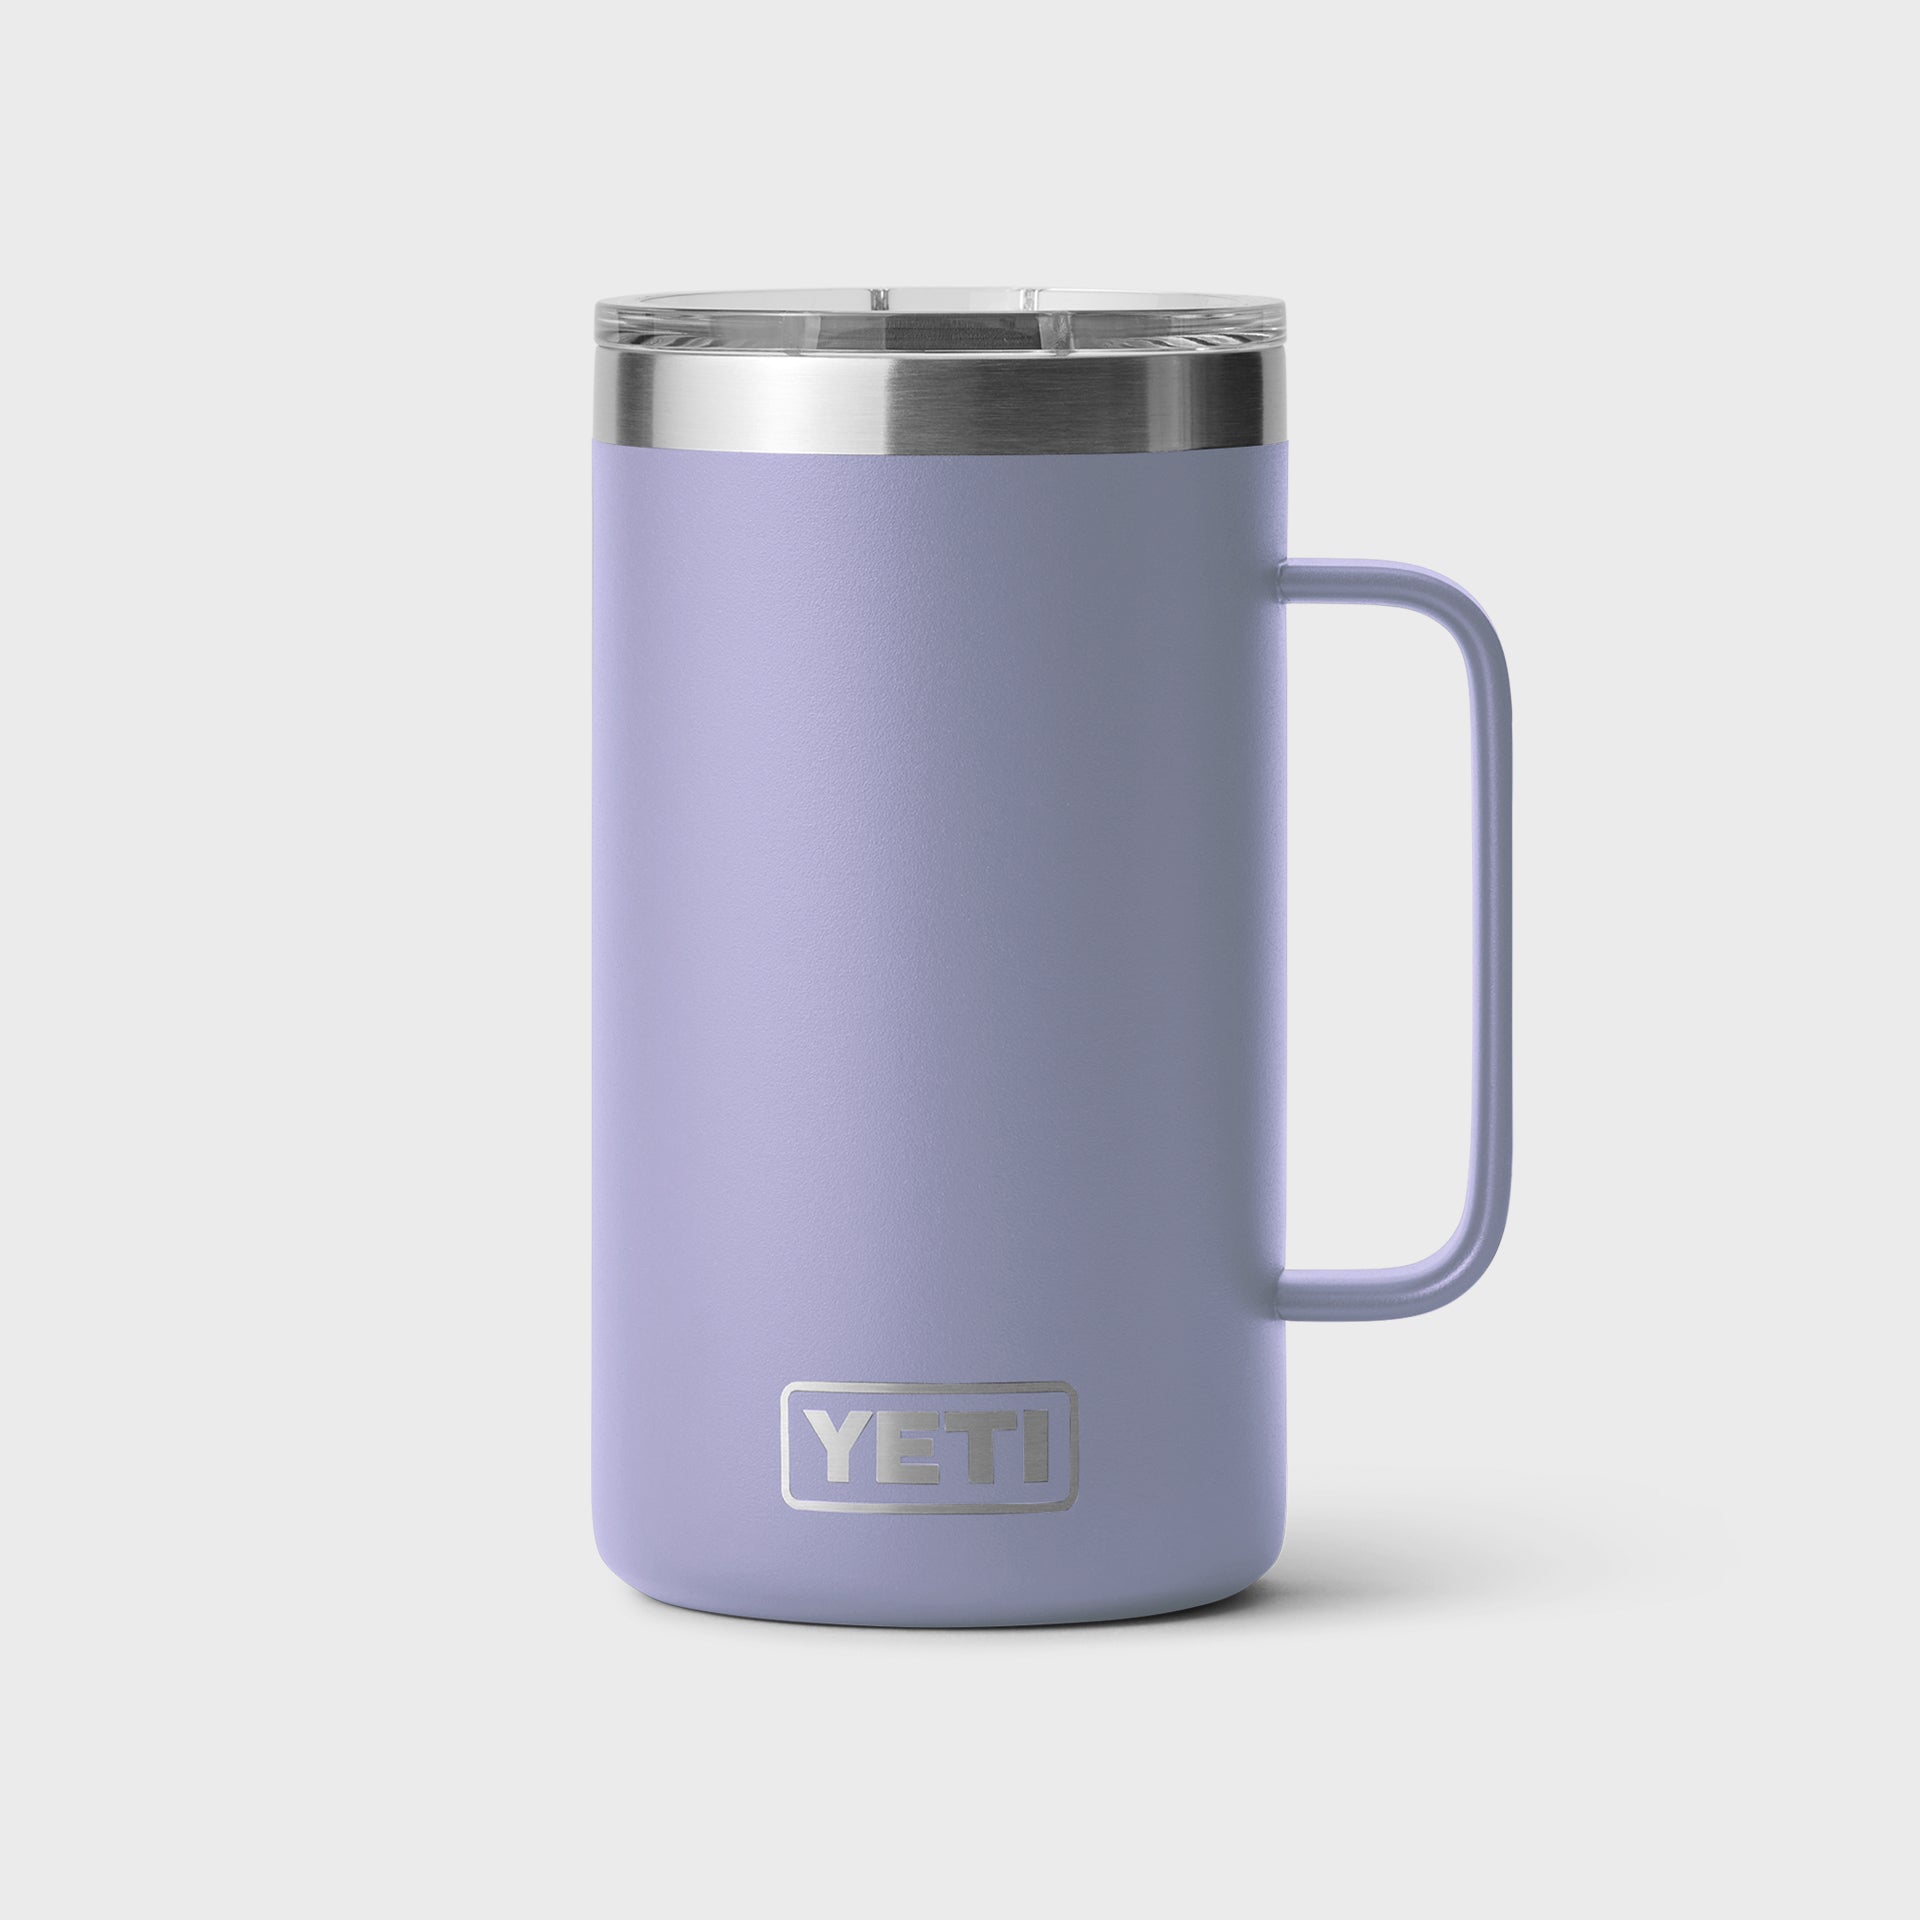 Yeti Rambler 24 oz Mug - Cosmic Lilac